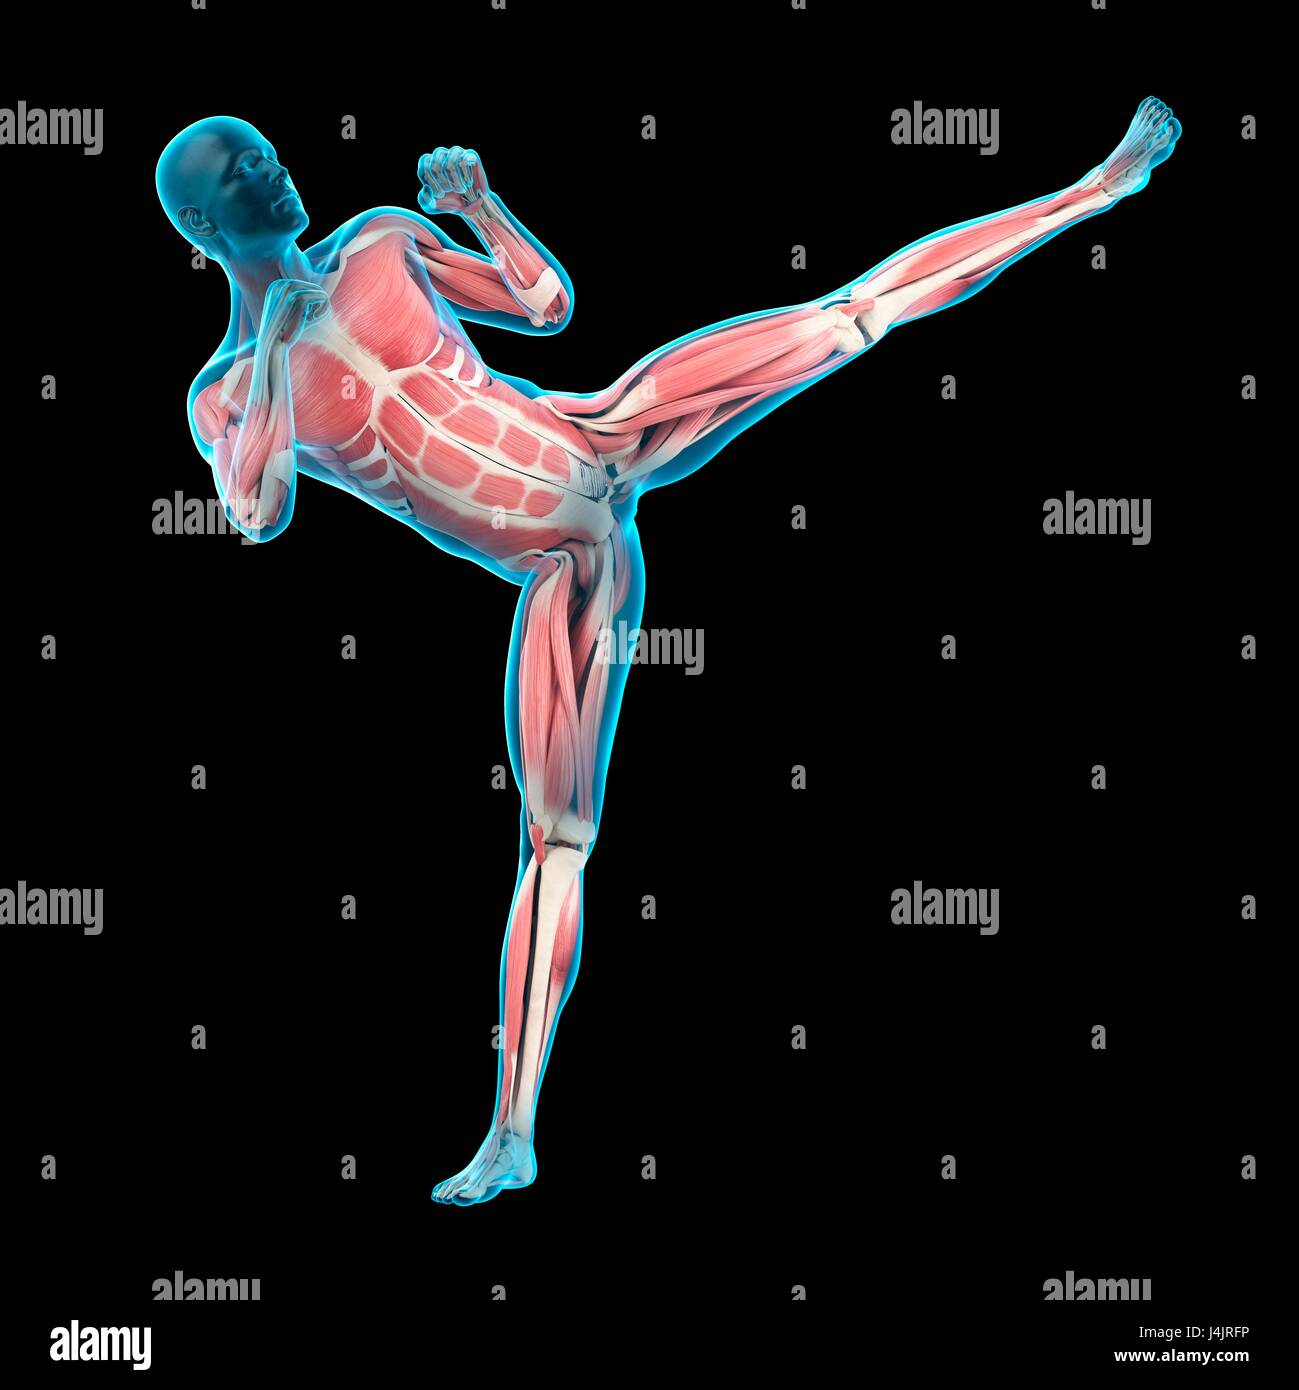 La structure musculaire de la personne faisant high kick, illustration. Banque D'Images